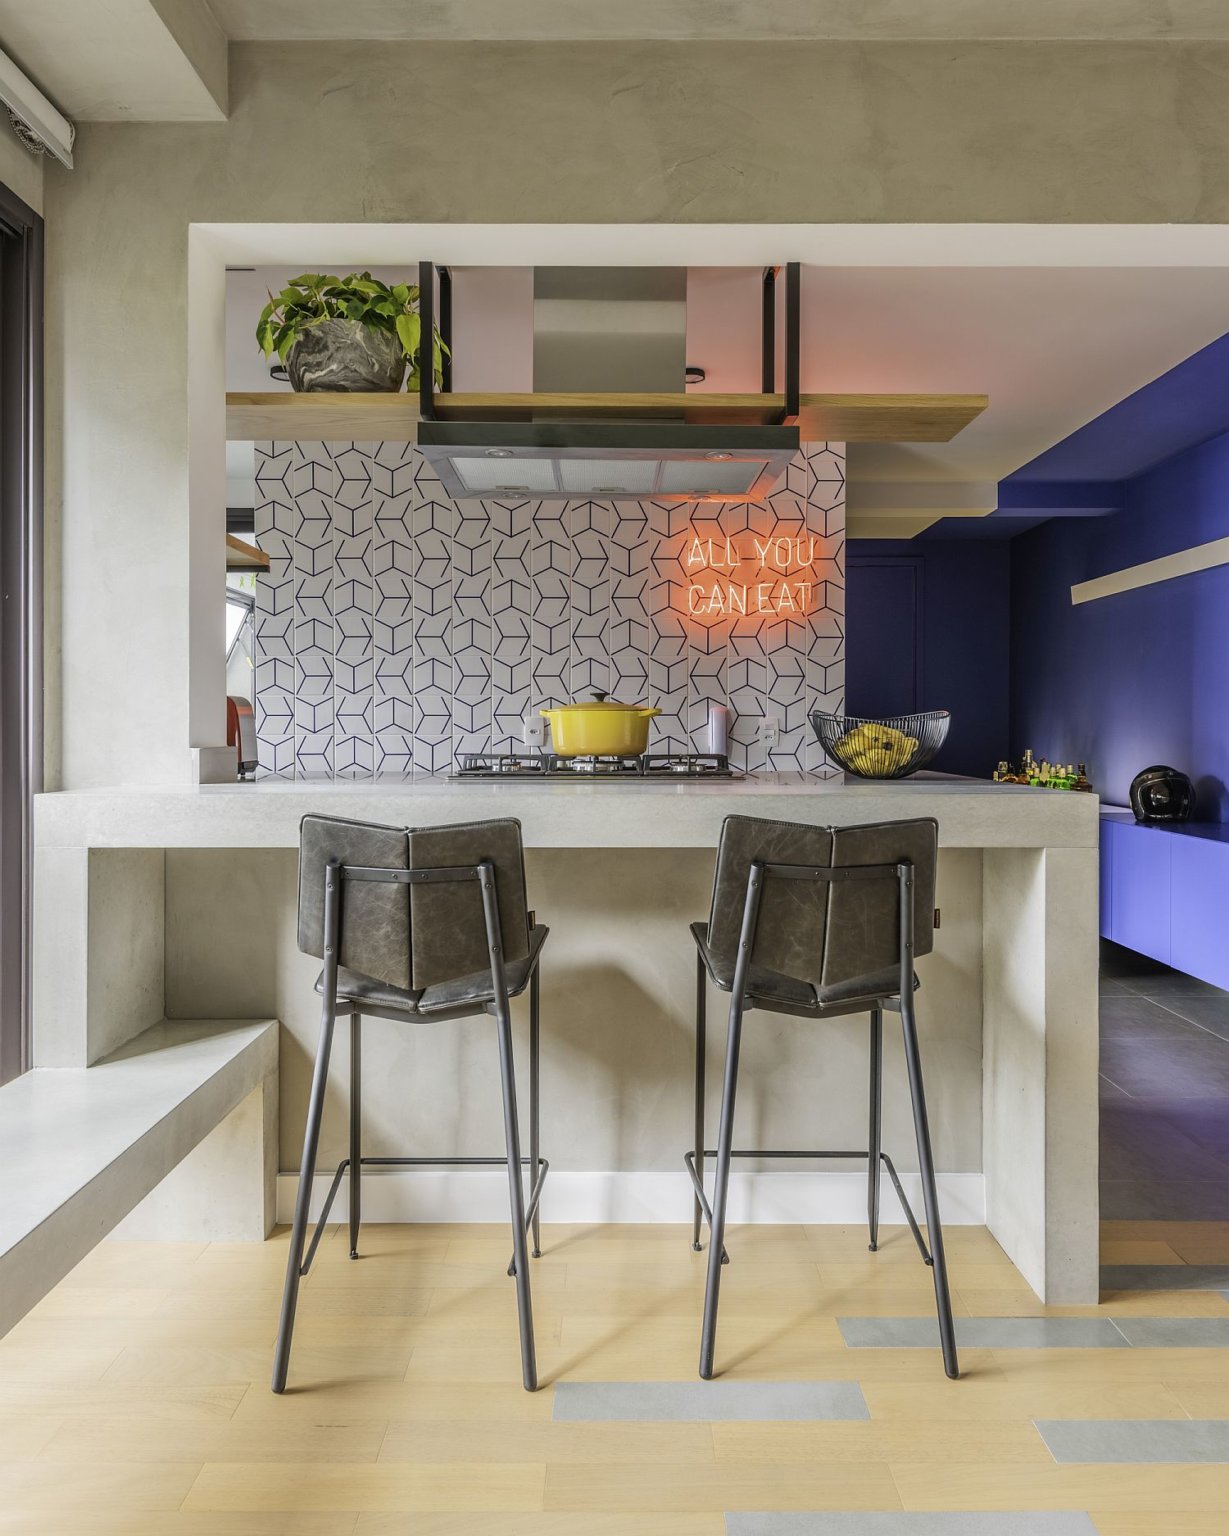 Hình ảnh toàn cảnh đảo bếp trong căn hộ đương đại với 2 ghế bar màu xám, tường ốp gạch men, kệ treo trần nhà.